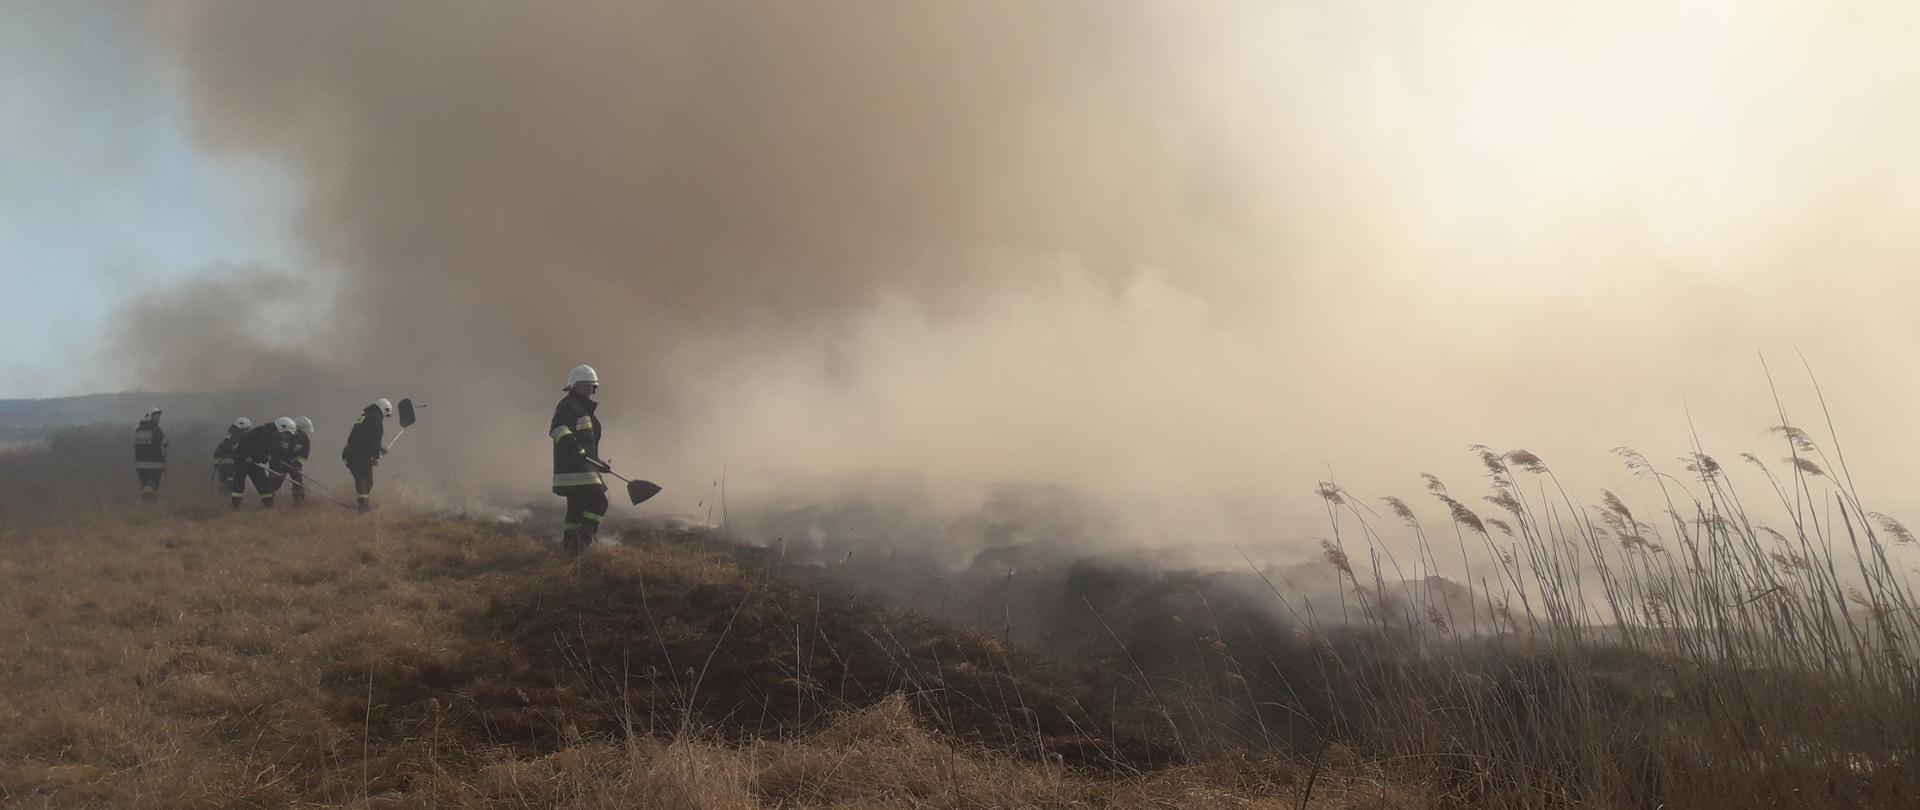 Zdjęcie przedstawia strażaków gaszących pożar suchej roślinności za pomocą tłumic. Działania odbywają się w silnym zadymieniu